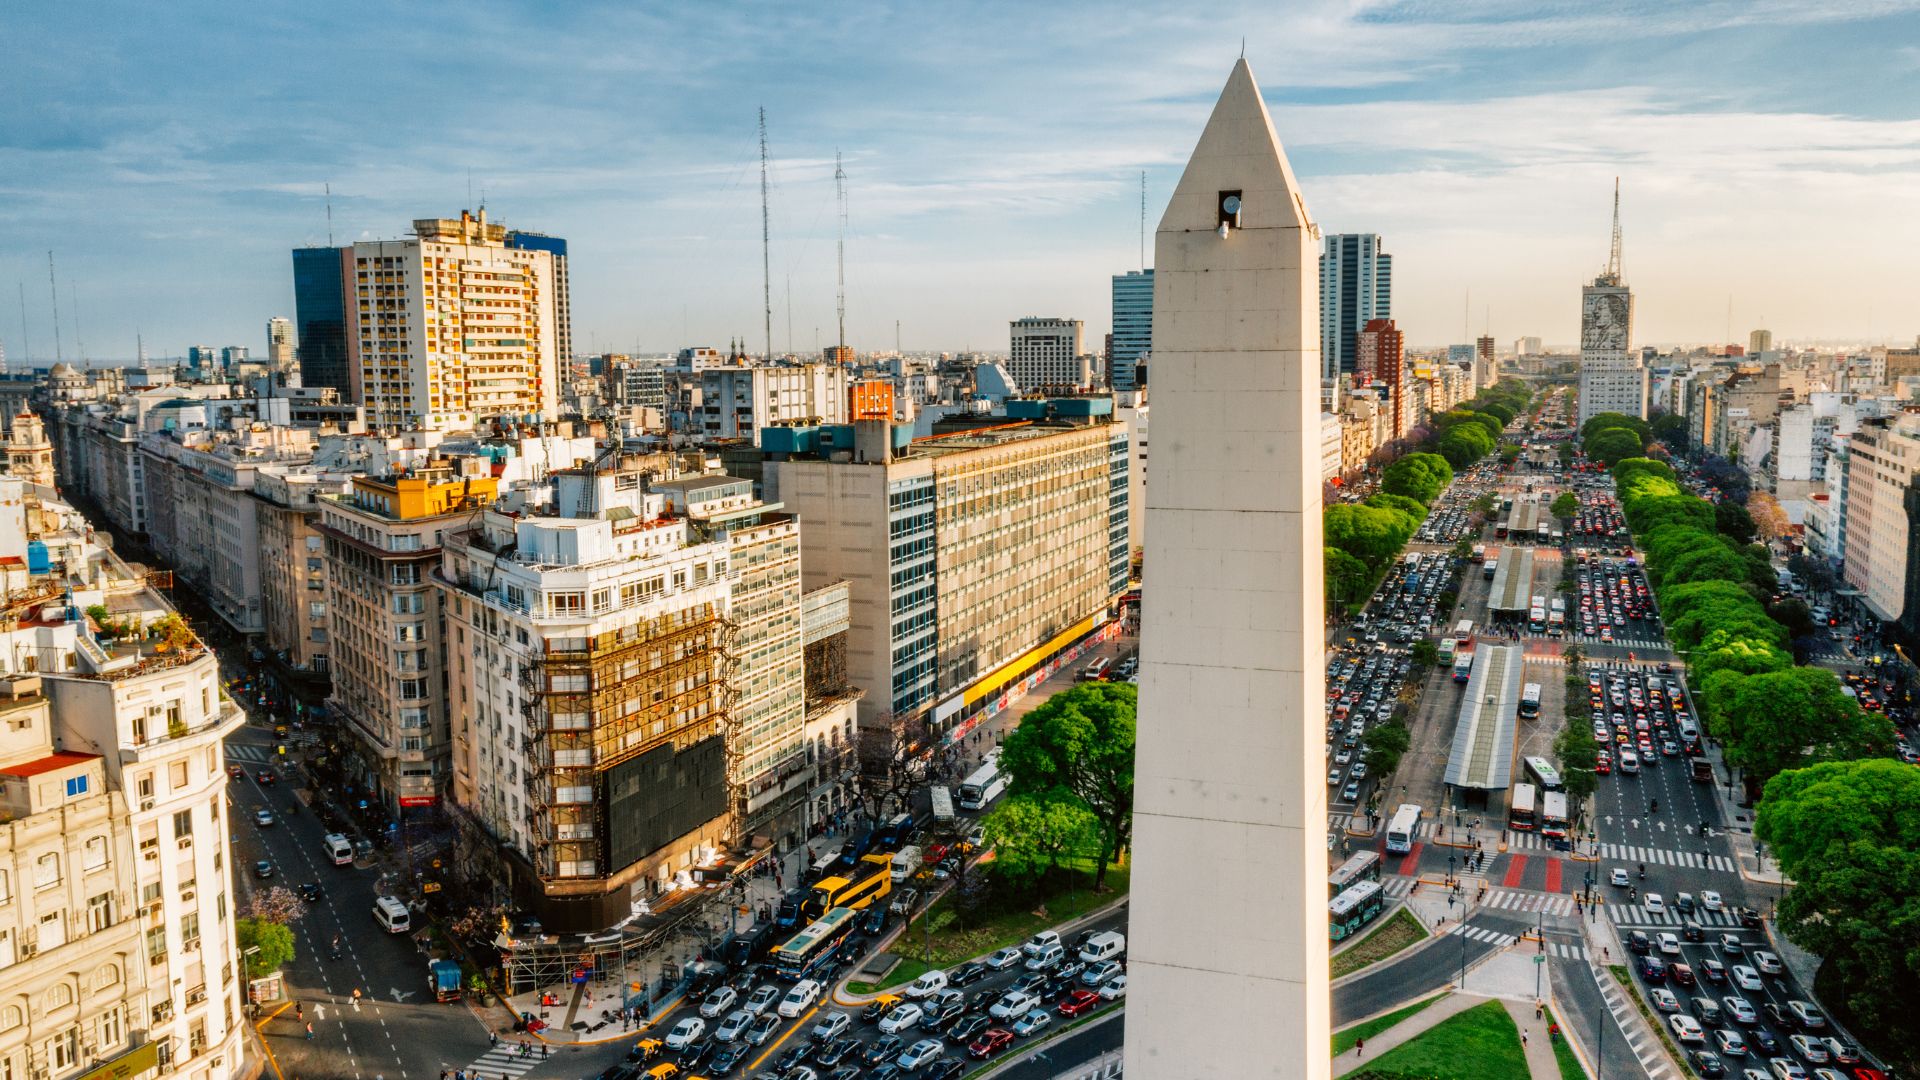 As principais rotas para viajar de carro na Argentina (e mais!)